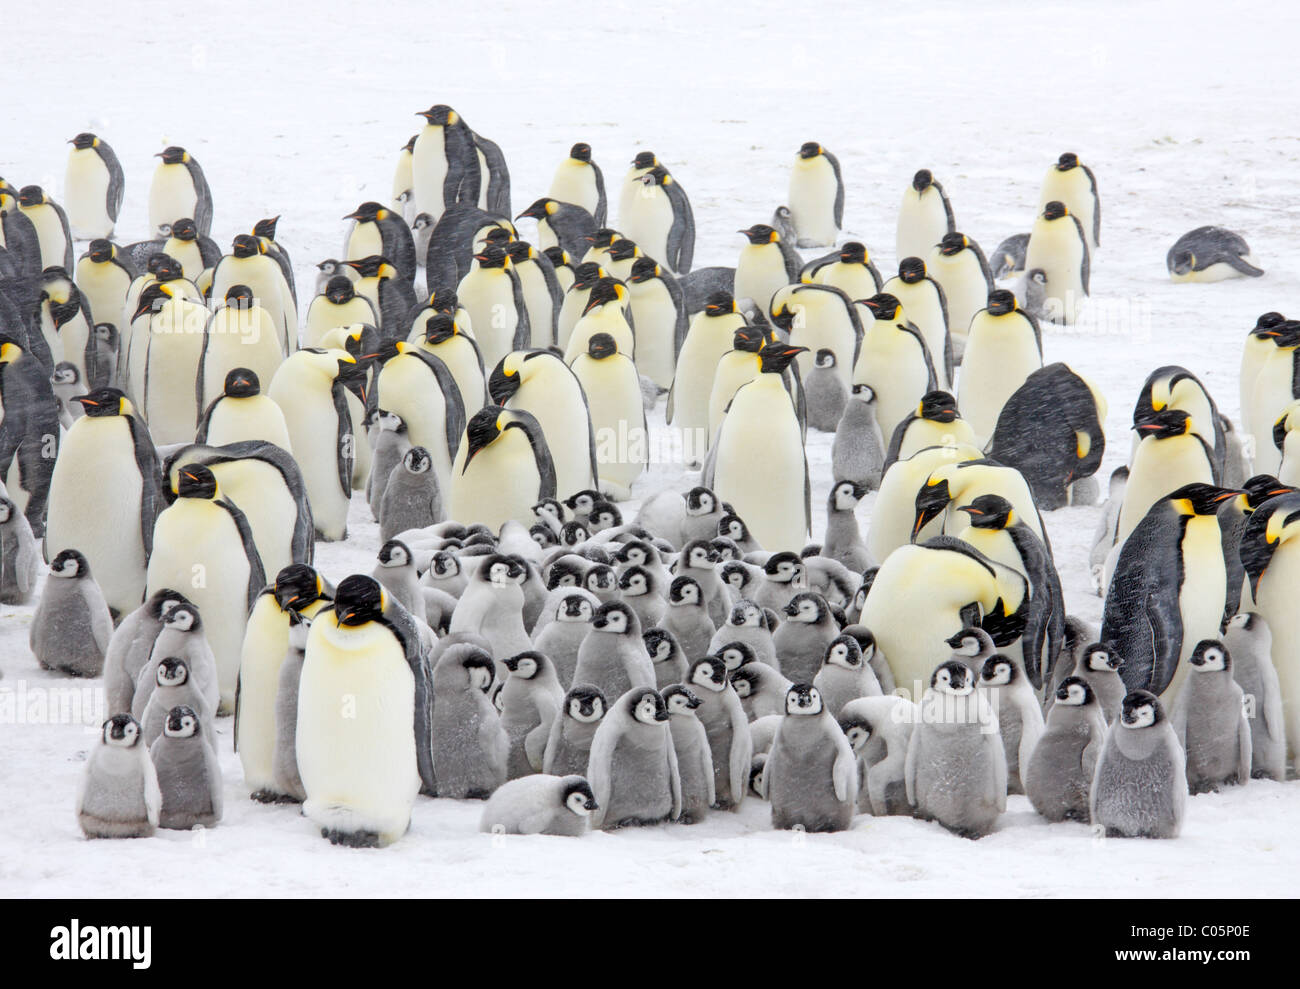 emperor-penguin-colony-in-a-snow-storm-o